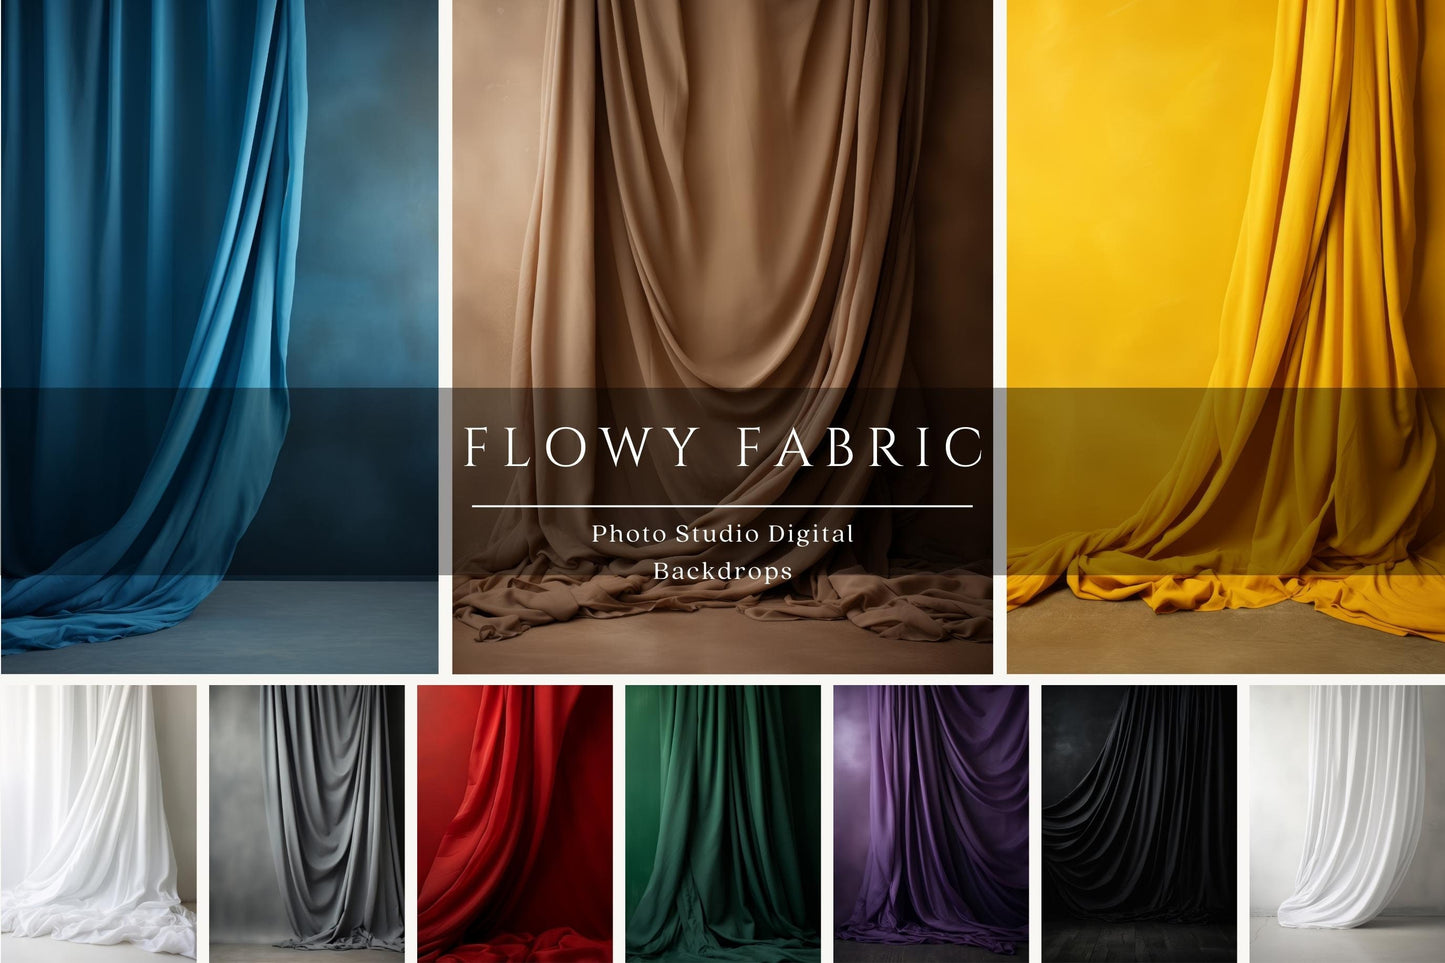 Flowy Fabric Digital Backdrops